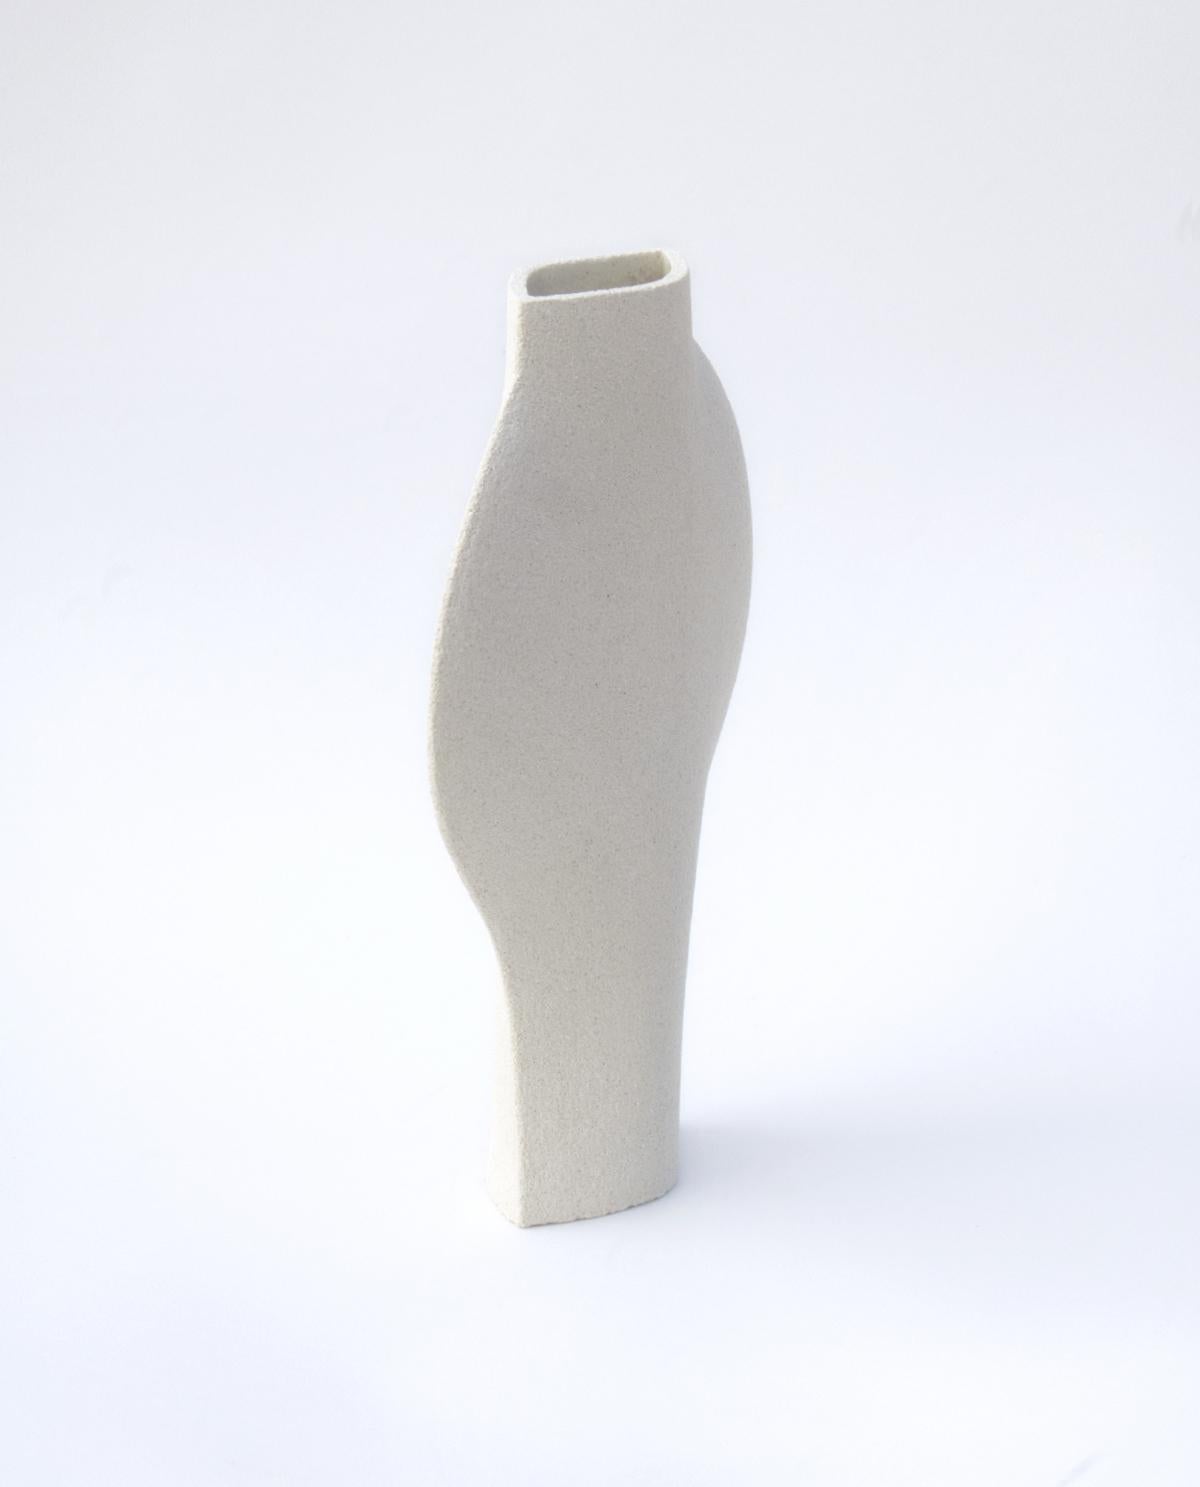 dal - Weiß' Keramik-Vase

Maße: H: 25 cm / L: 20 cm
H: 10 Zoll. / L: 8 Zoll.

- Bei hoher Temperatur gebranntes Steinzeug, innen mit transparenter, glänzender Glasur versehen.
- Rohes Äußeres, das die natürliche Beschaffenheit des Tons zur